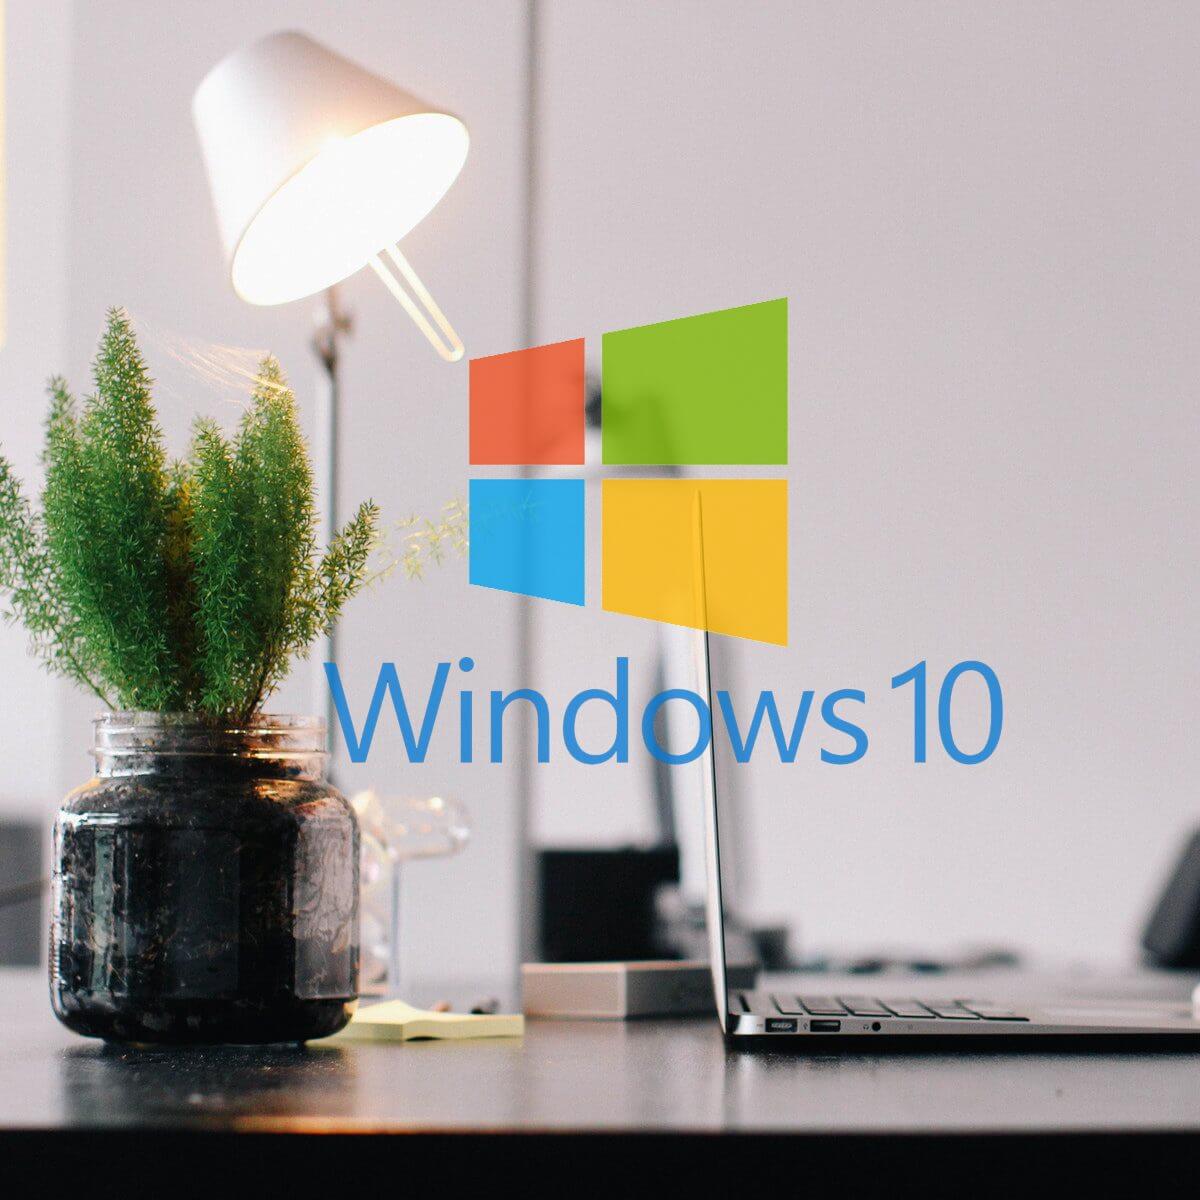 Windows        10 chương trình ảnh xuất cho video ứng dụng